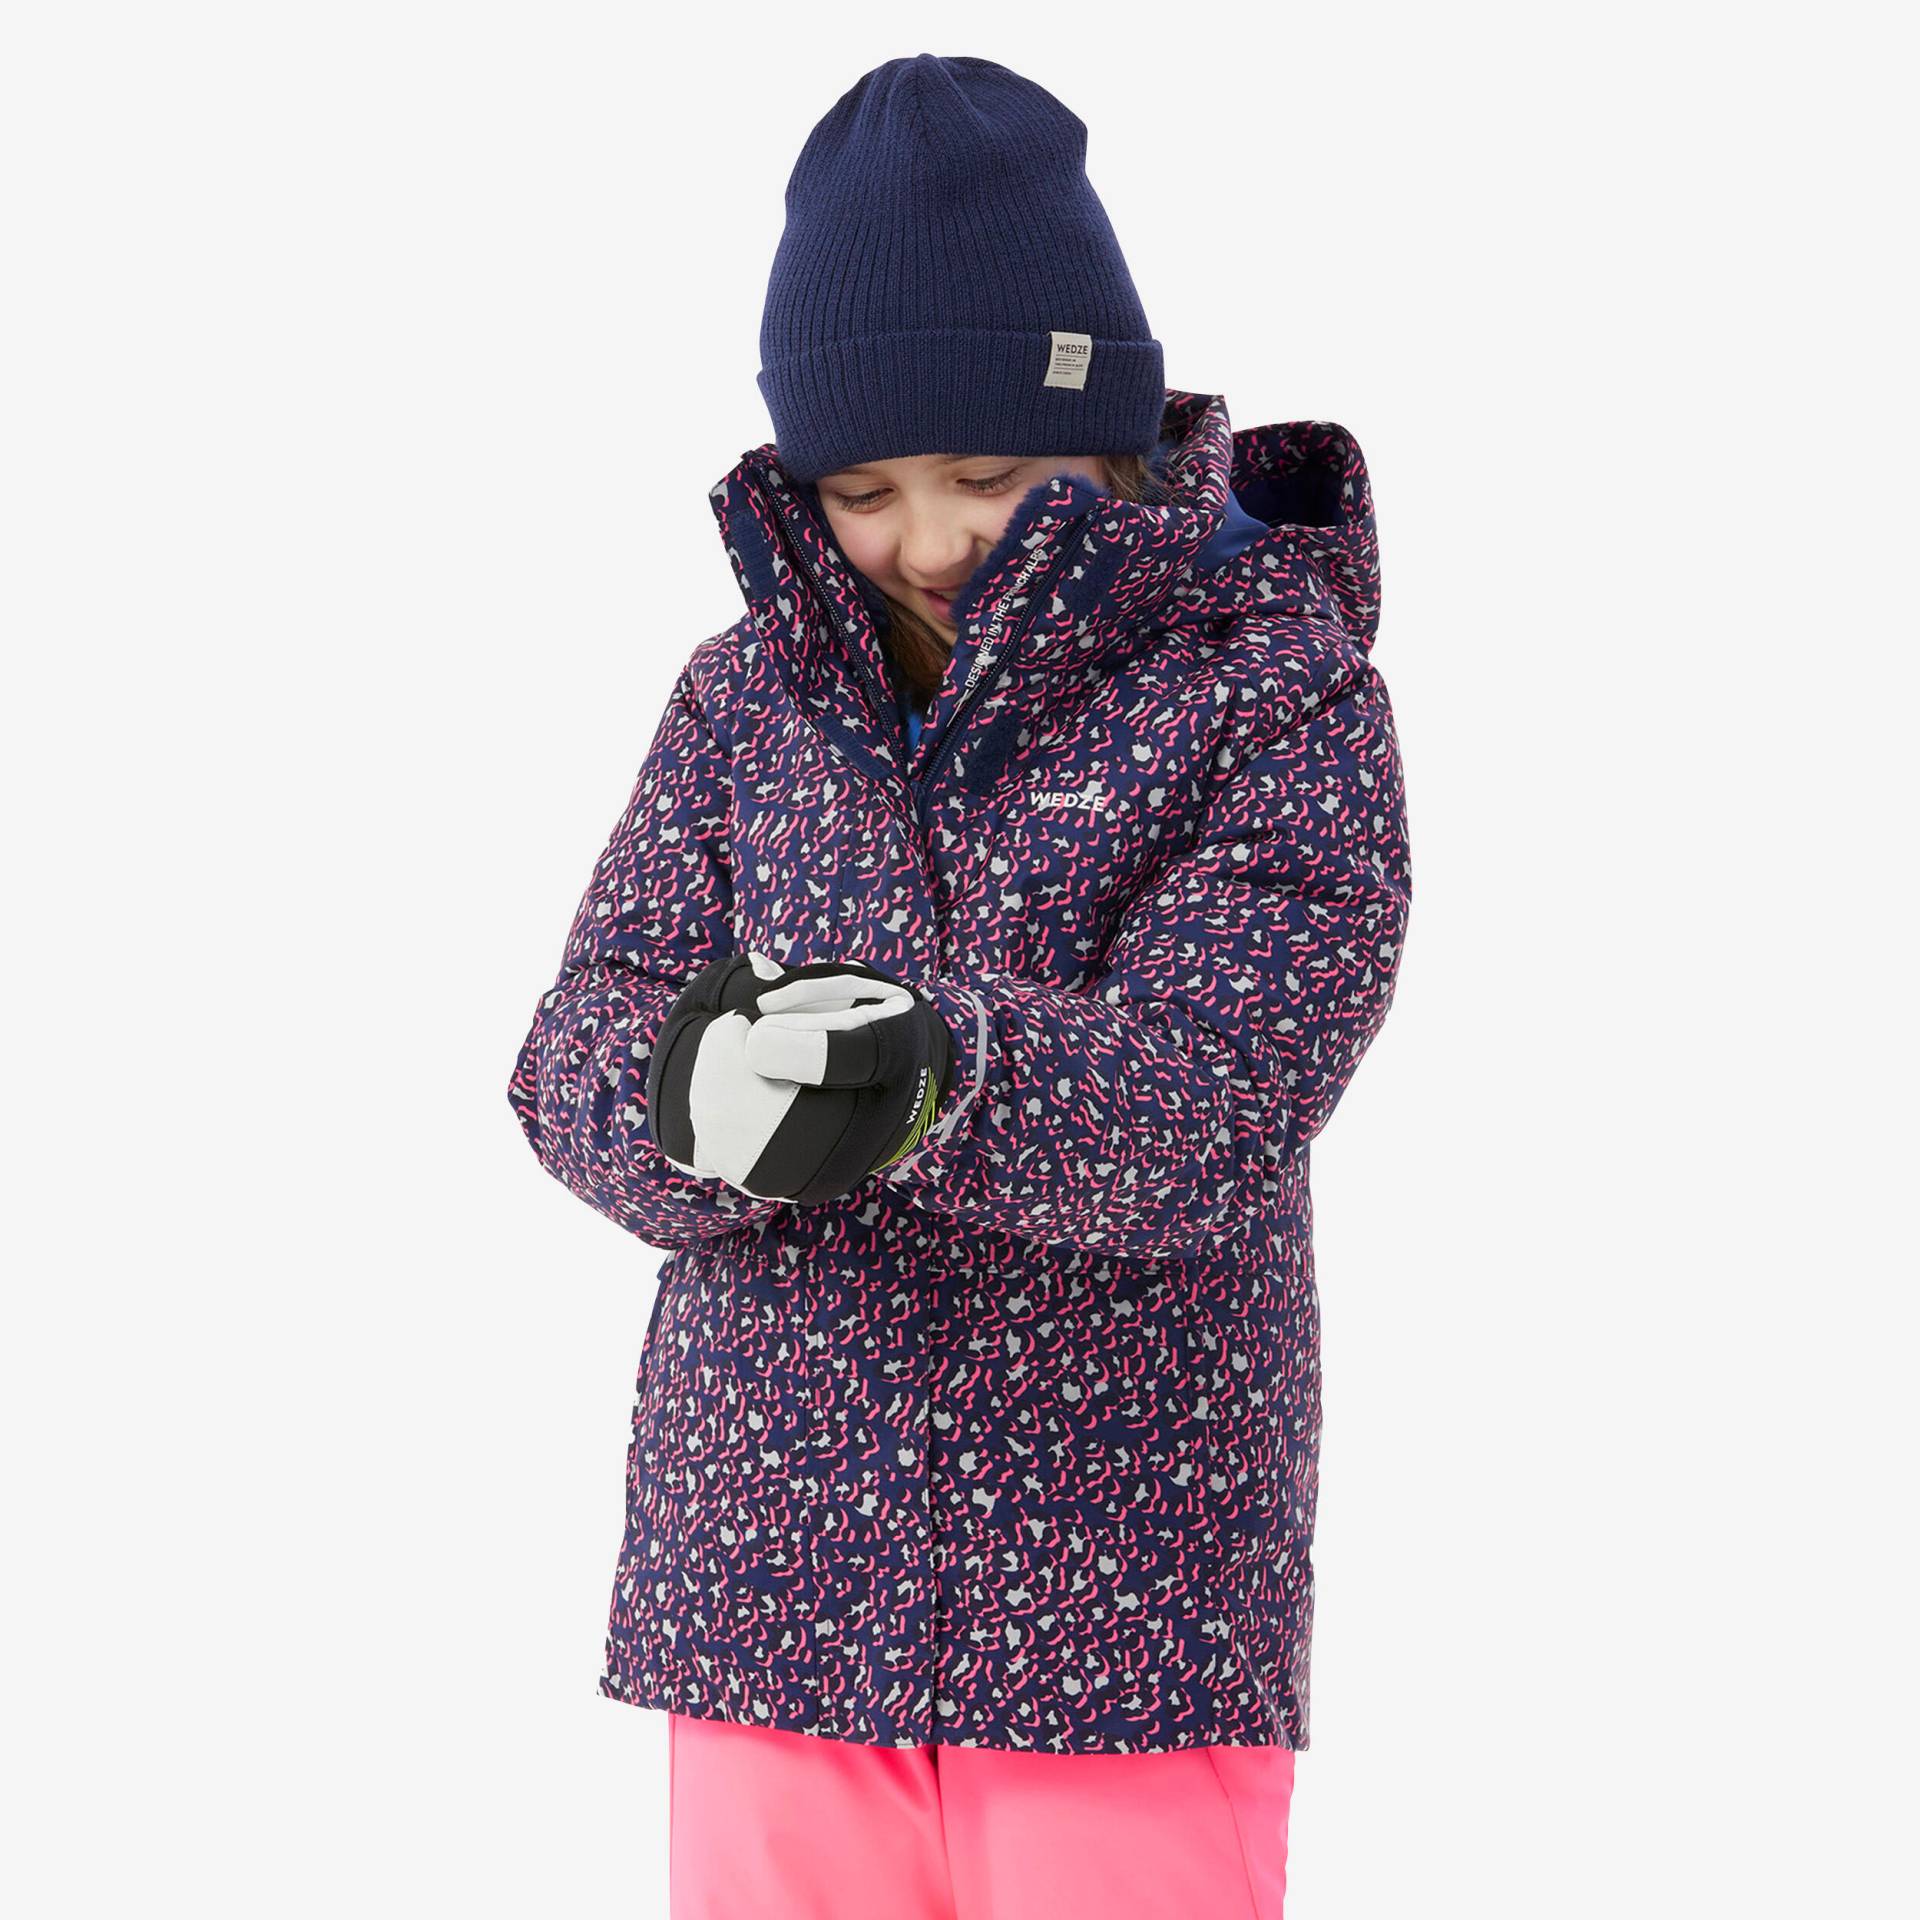 Skijacke Kinder warm wasserdicht - 500 lila Leoprint von WEDZE